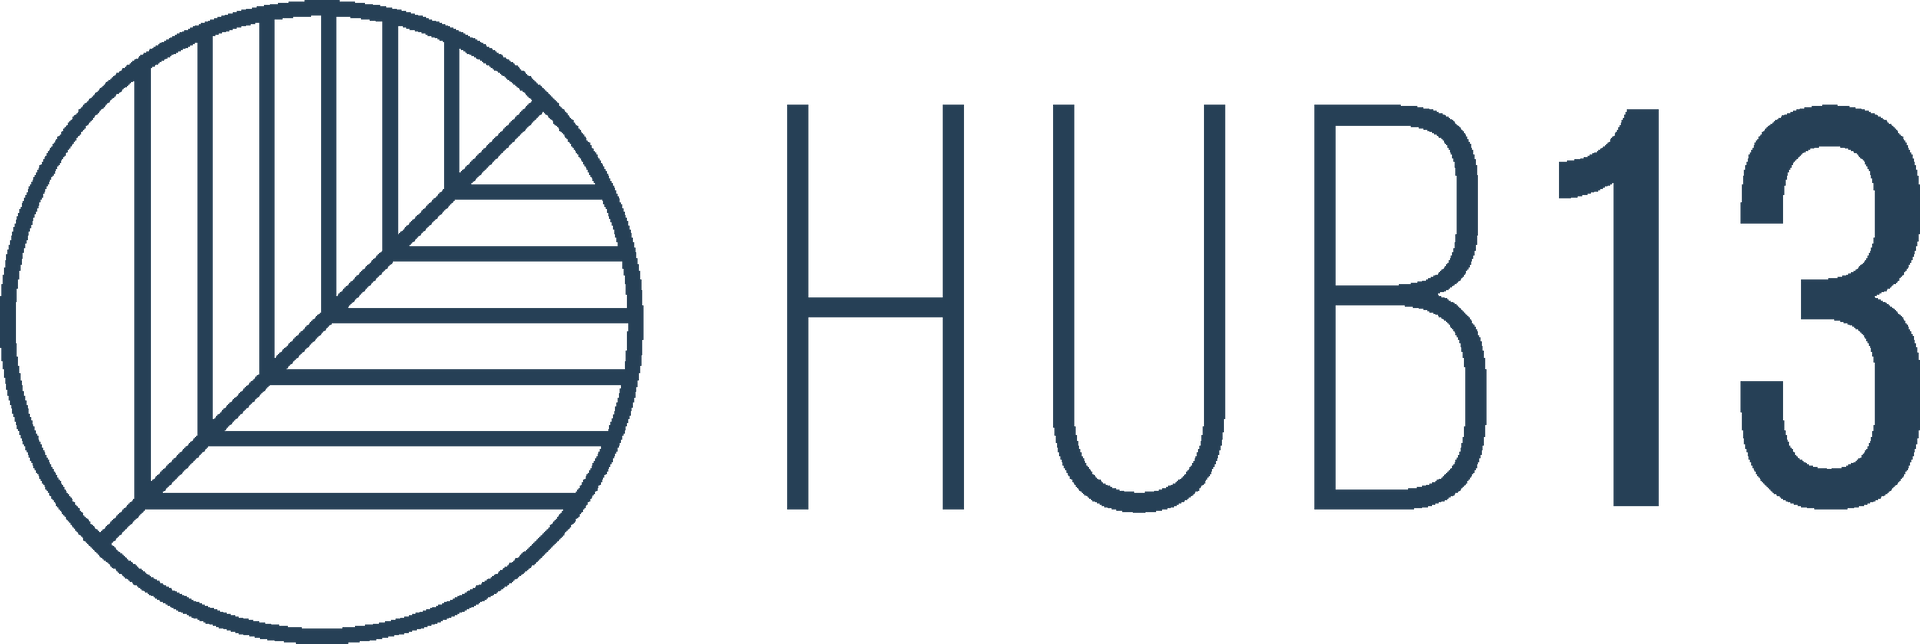 Hub13 Logo - Header - Click to go home